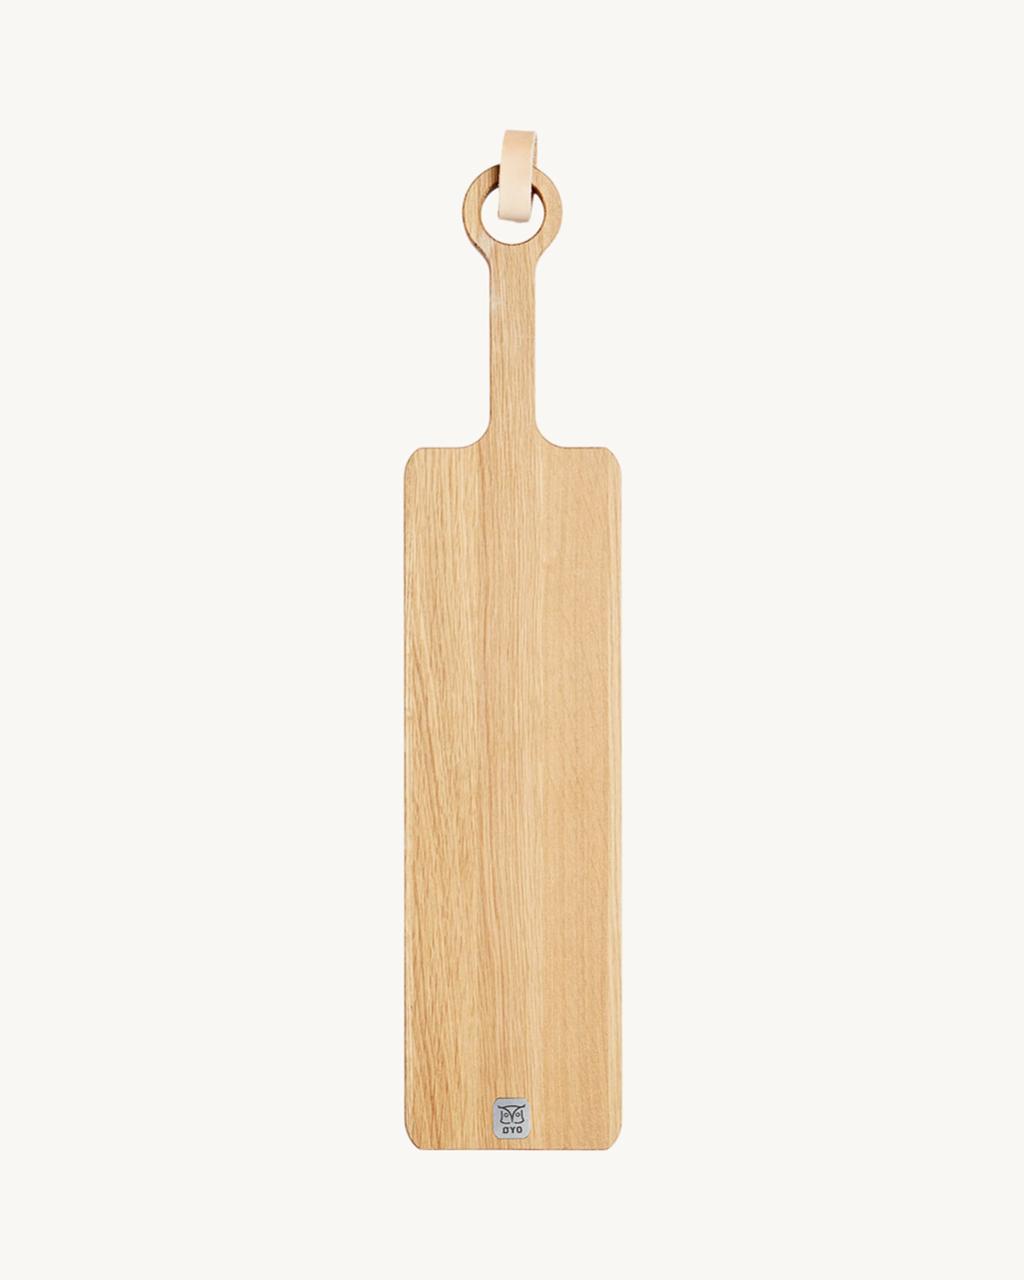 Spekefjøl, oak board